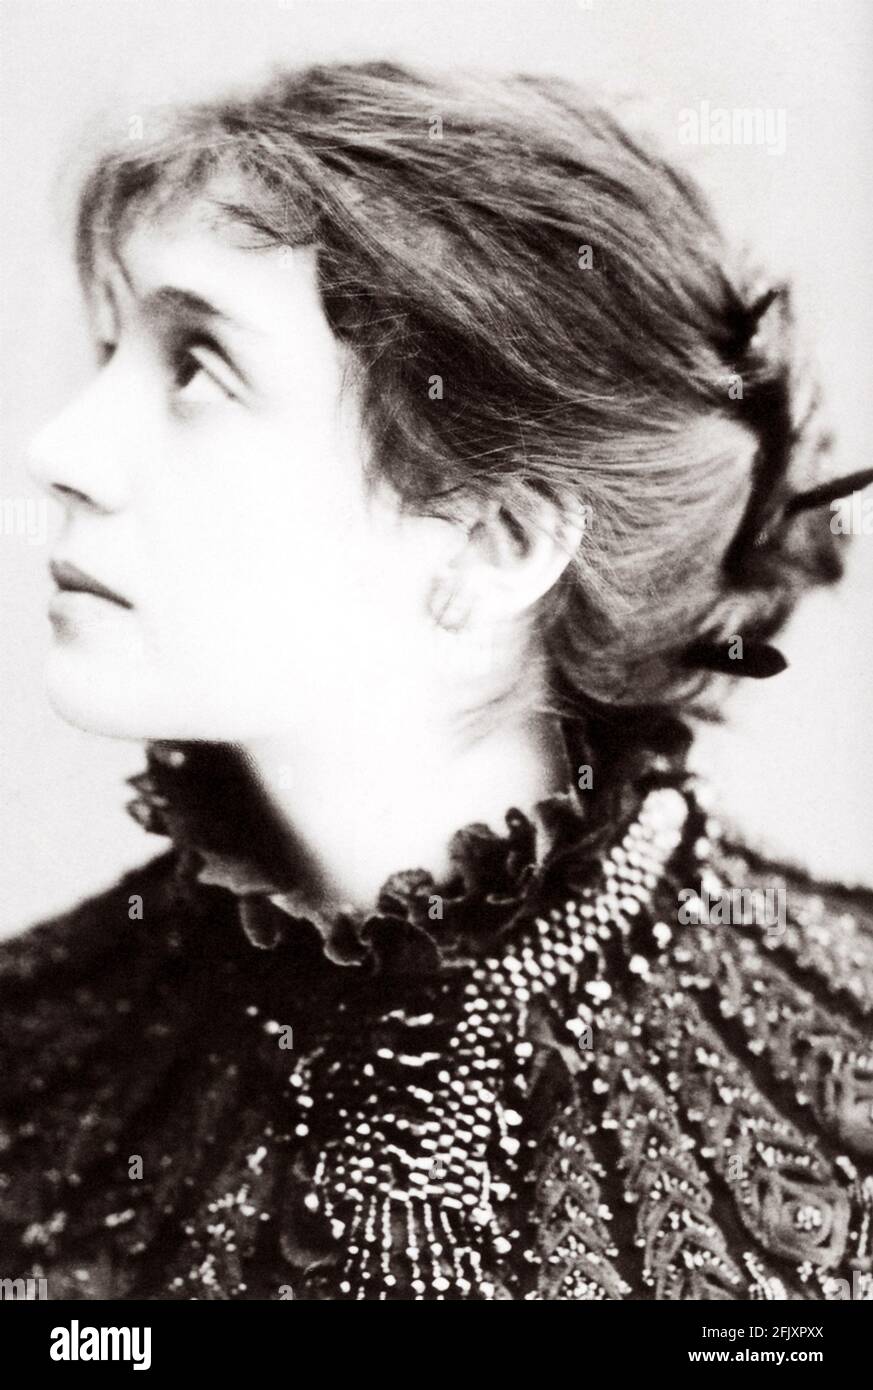 1880 Ca, ITALIEN : die berühmteste italienische Schauspielerin ELEONORA DUSE ( 1858 - 1924 ) als jung war, Liebhaber der DICHTERIN GABRIELE D'ANNUNZIO - THEATER - TEATRO - DANNUNZIO - D' ANNUNZIO - divina - attrice teatrale - profilo - Profil ---- Archivio GBB Stockfoto